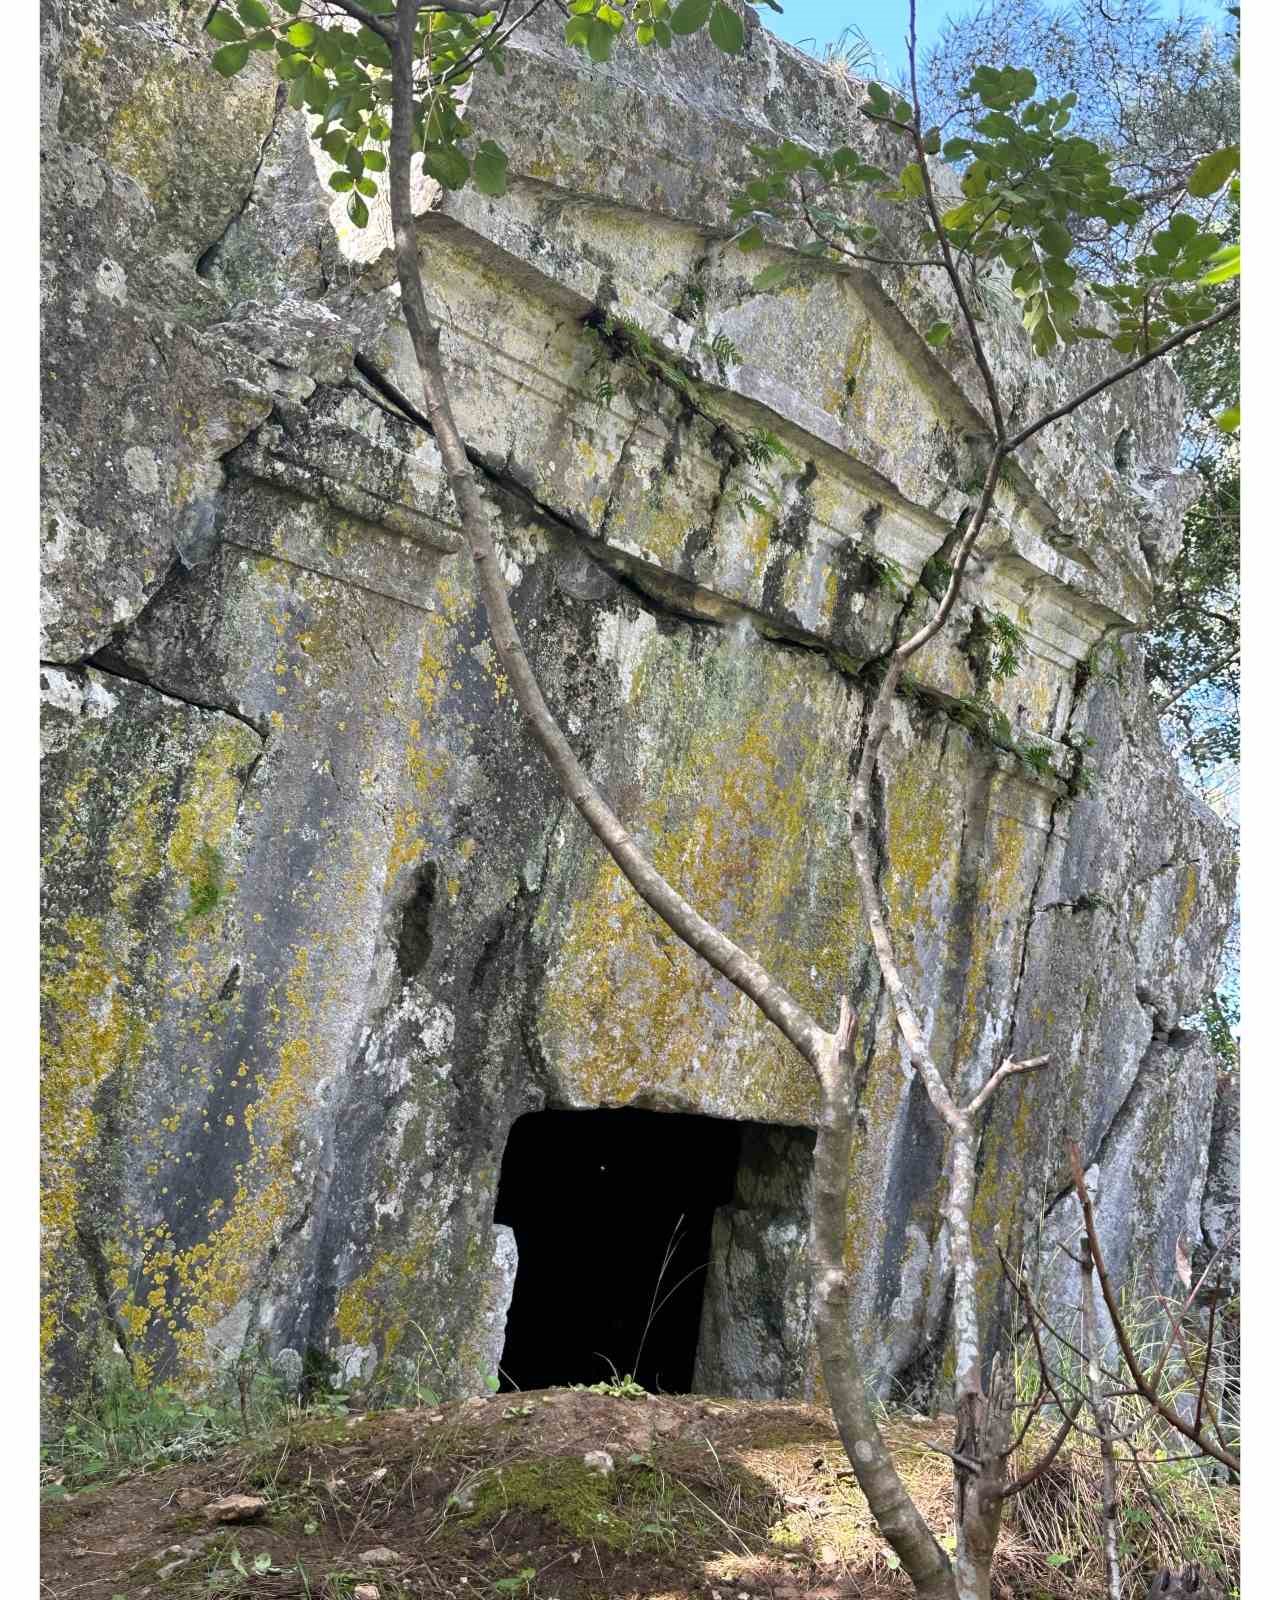 Marmaris’te bulunan 2500 yıllık kaya mezarı turizme kazandırılıyor
